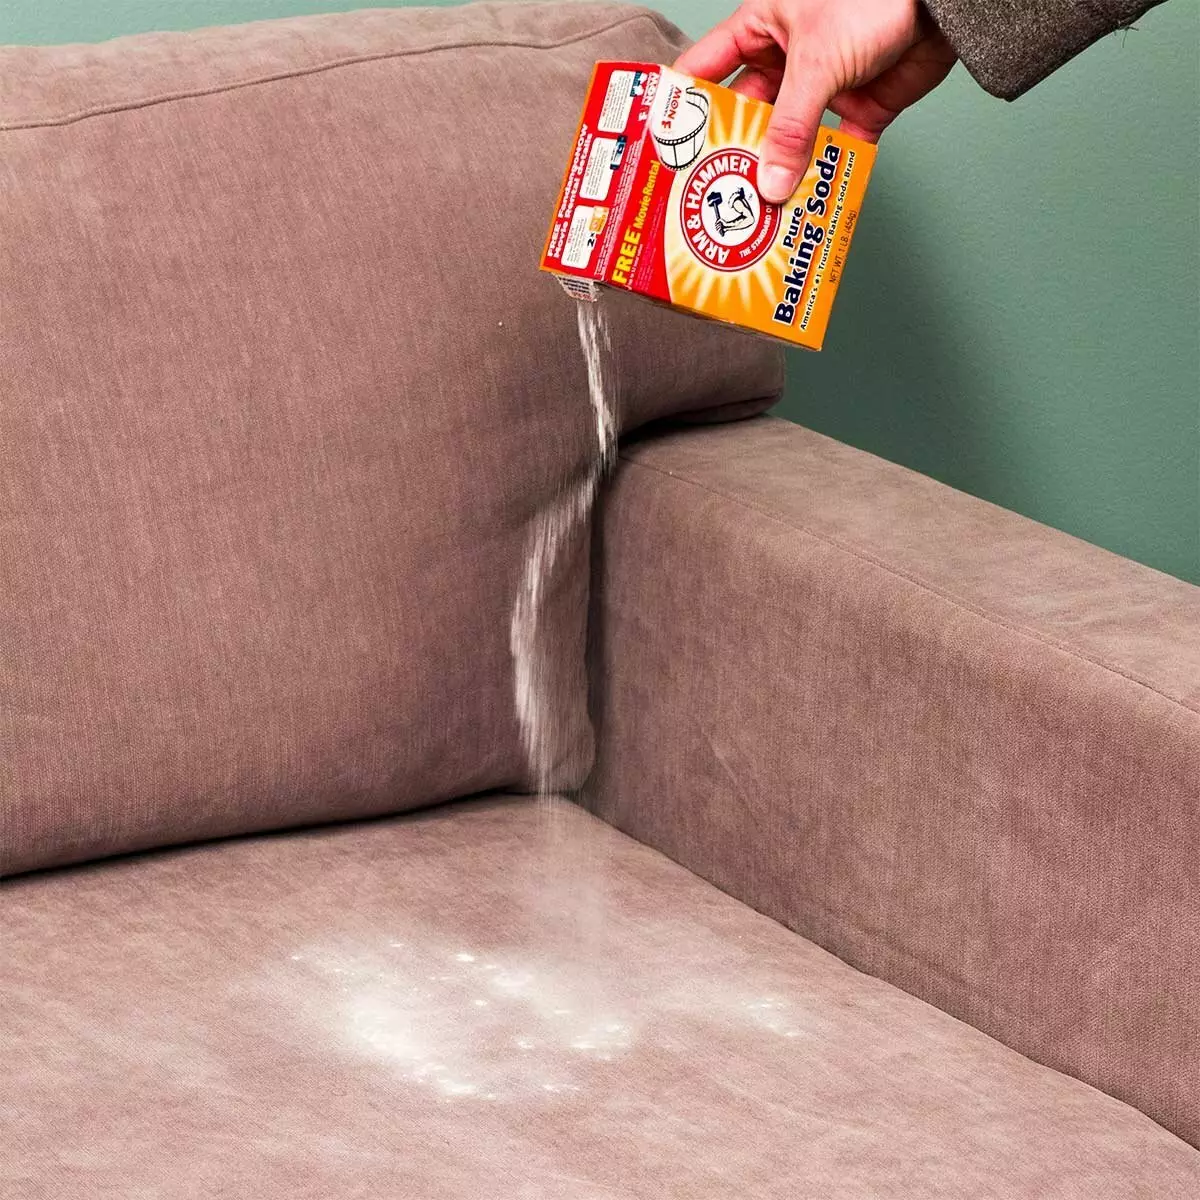 очистить мебель от пятен в домашних условиях